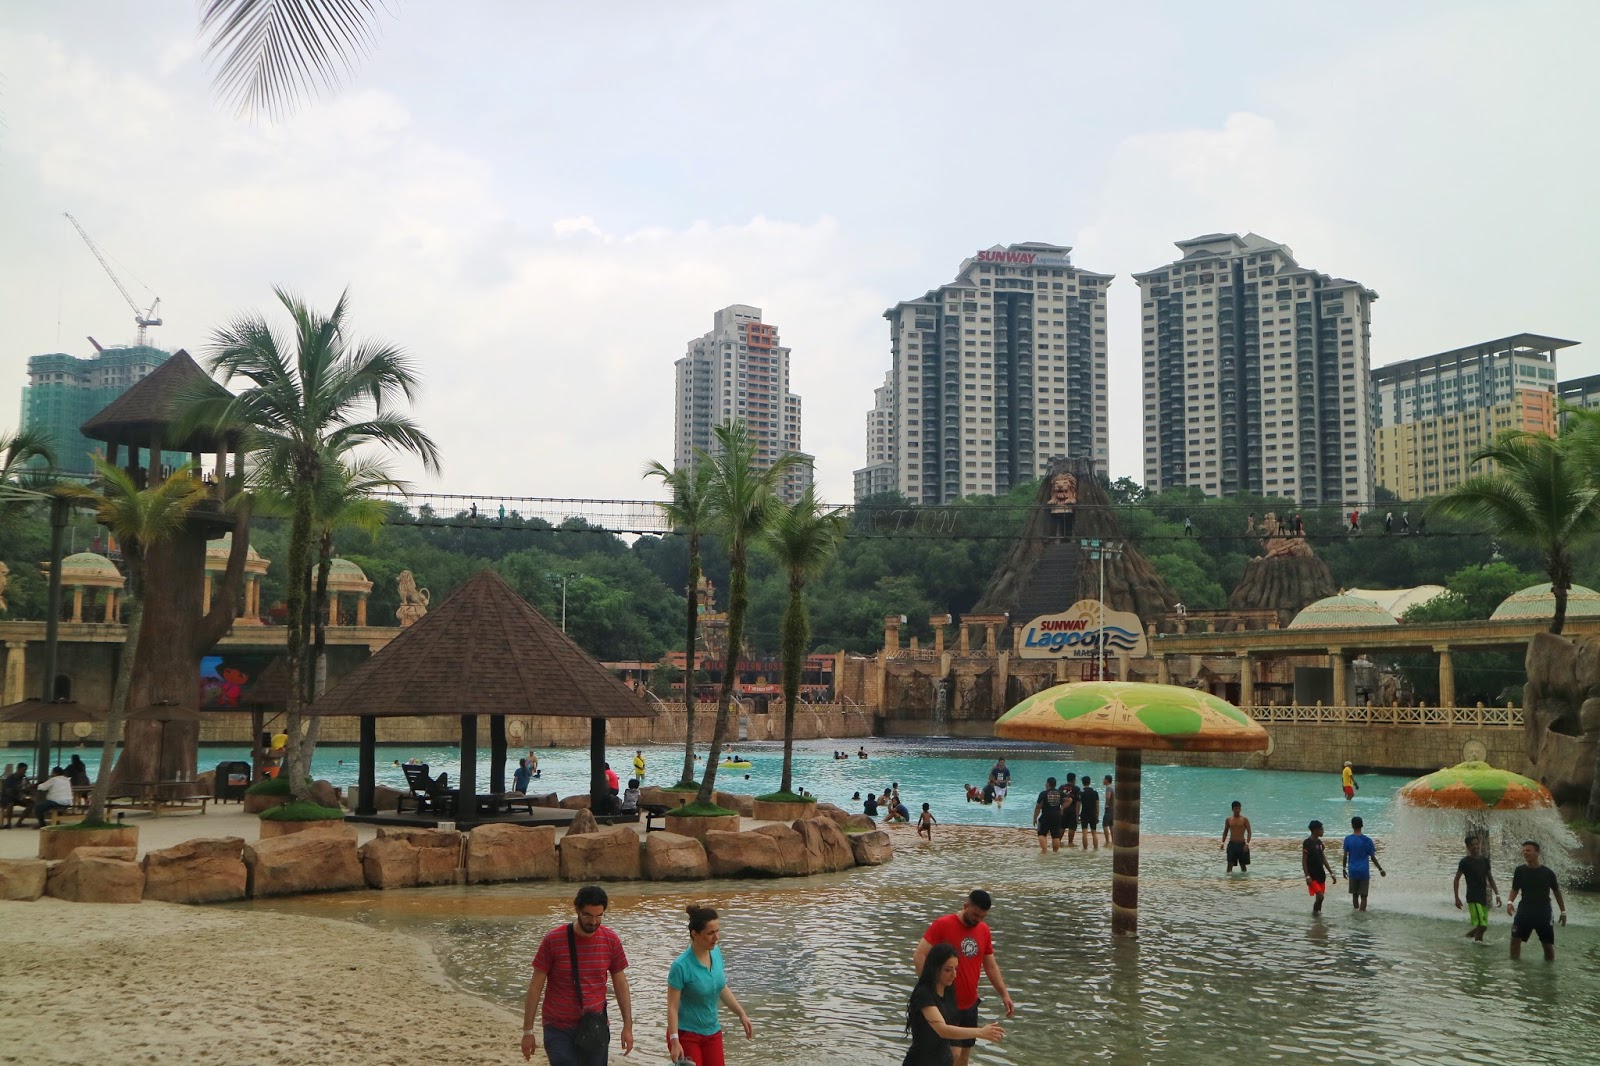 Sunway Lagoon, Malaysia